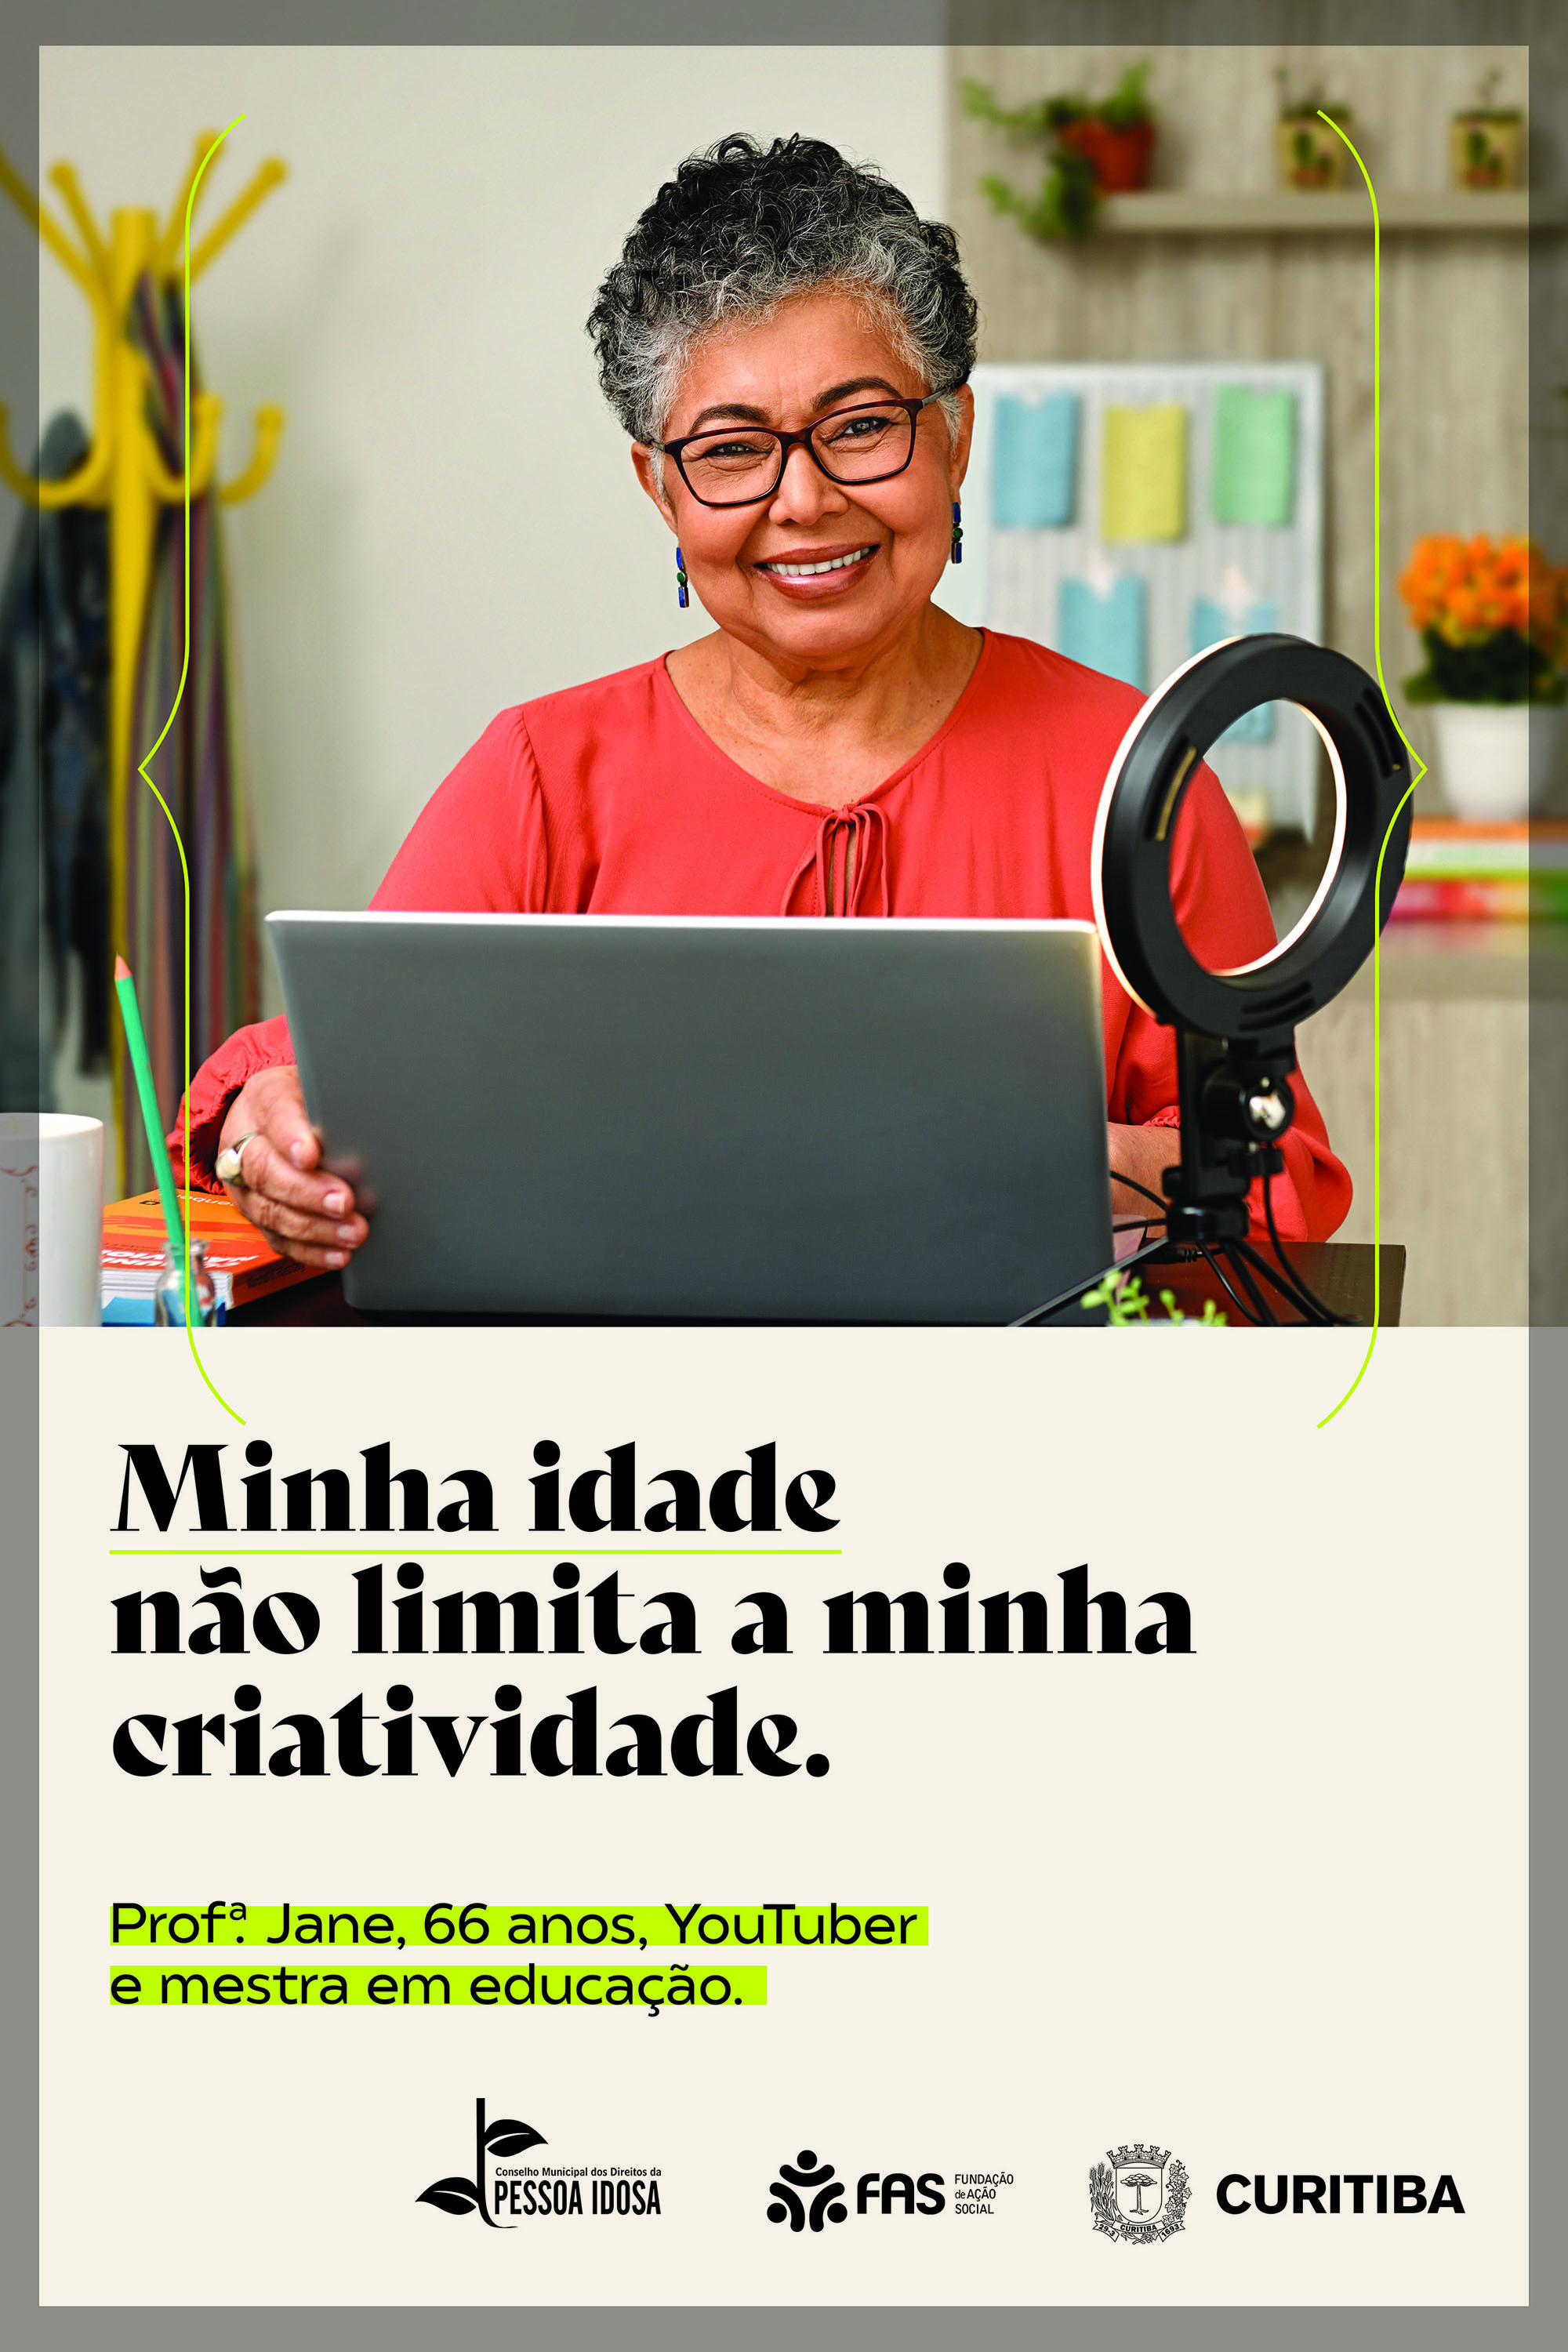 Cabeleireira mais idosa do Brasil trabalha em Curitiba